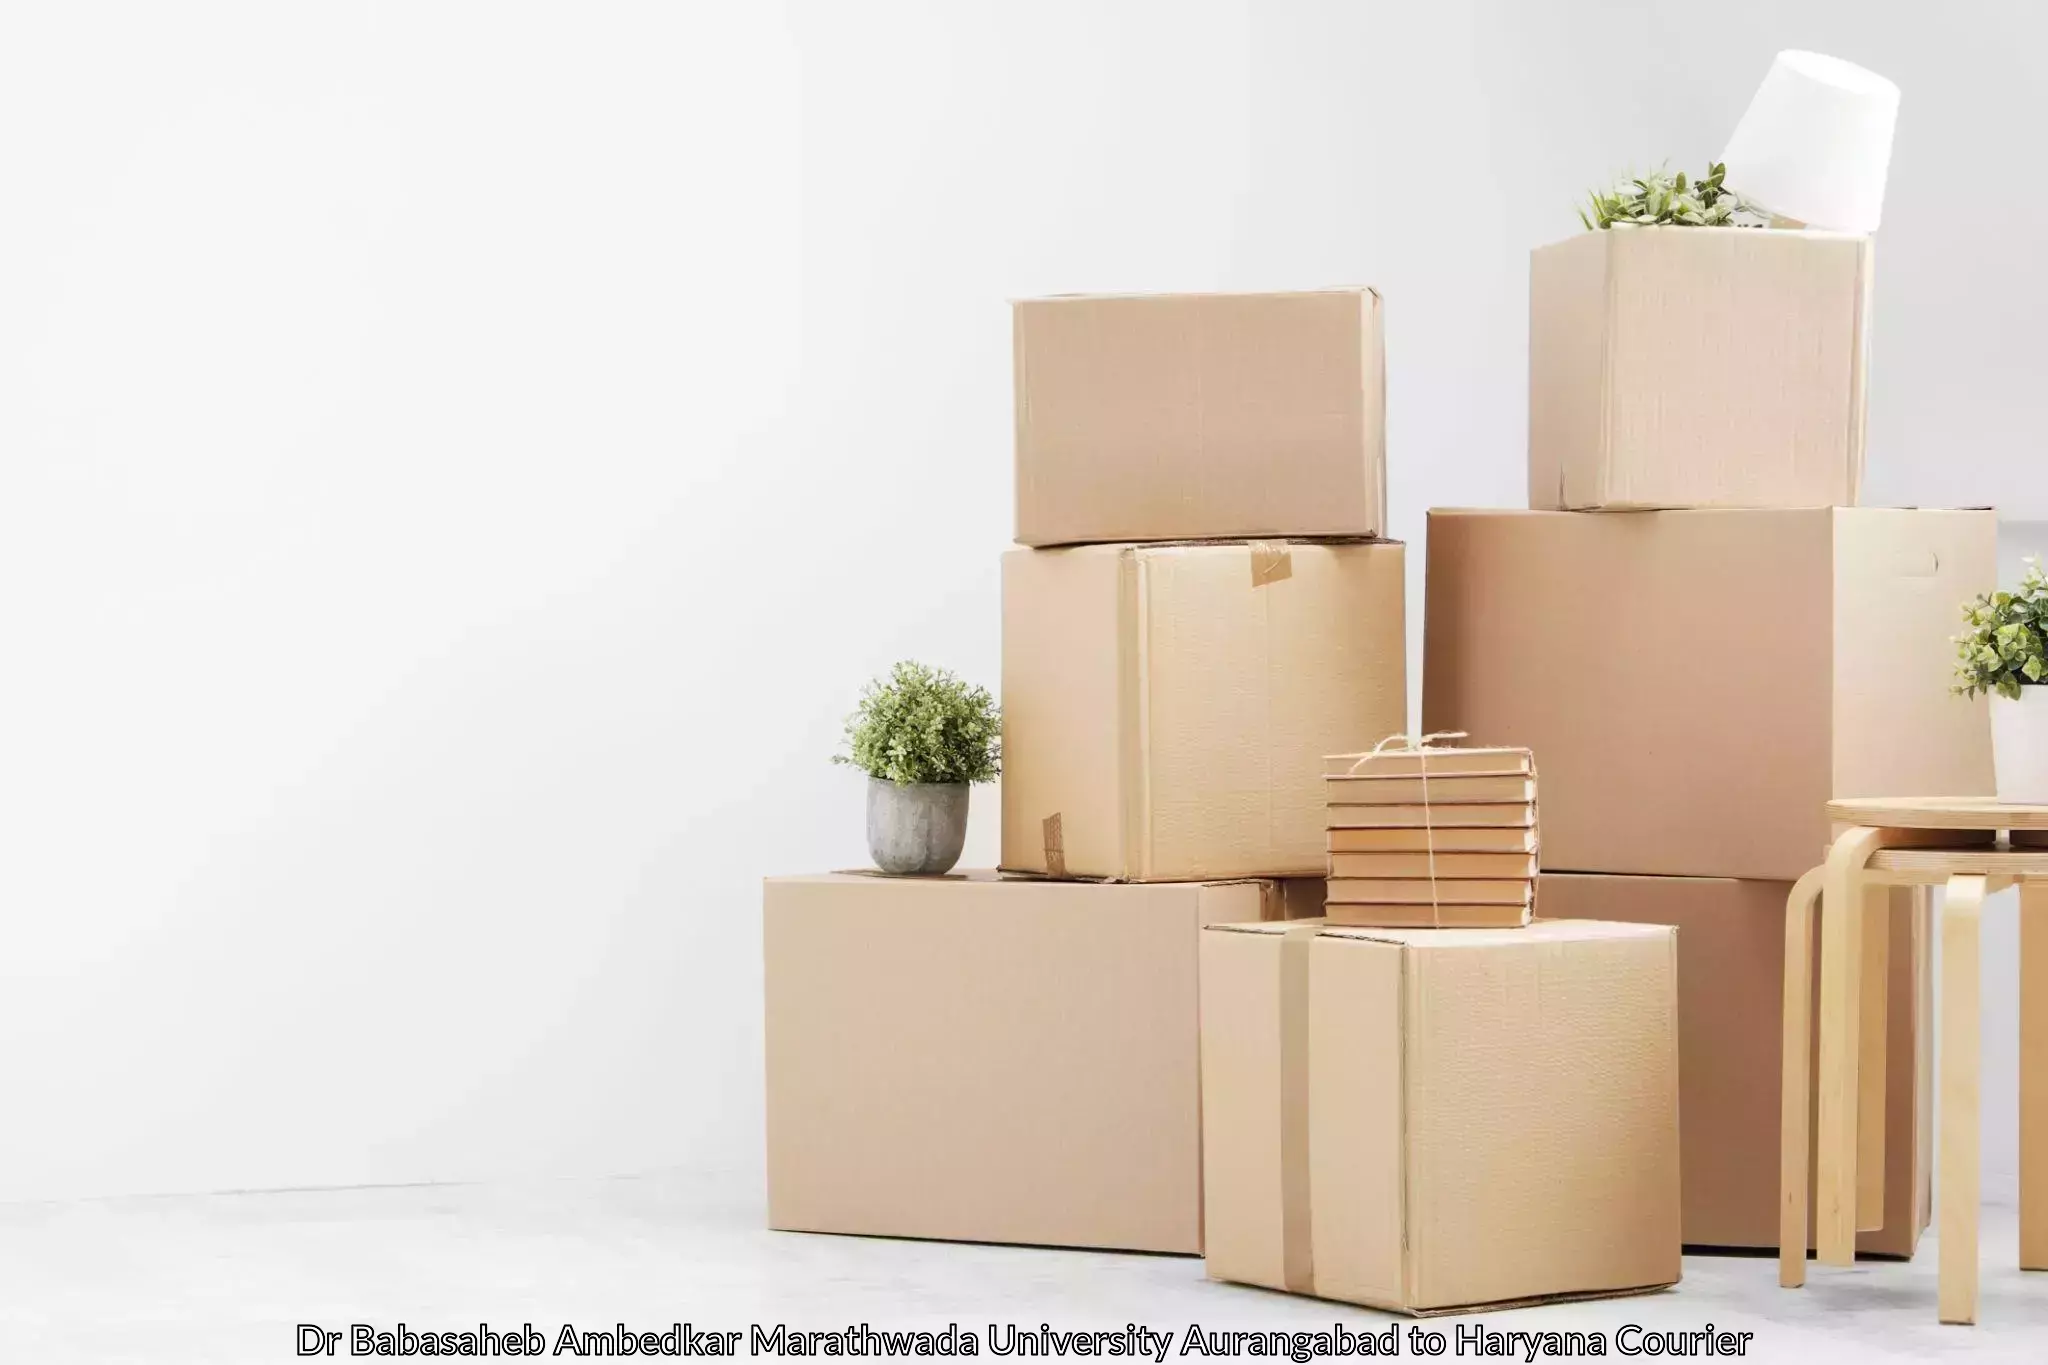 Home goods moving company Dr Babasaheb Ambedkar Marathwada University Aurangabad to Barwala